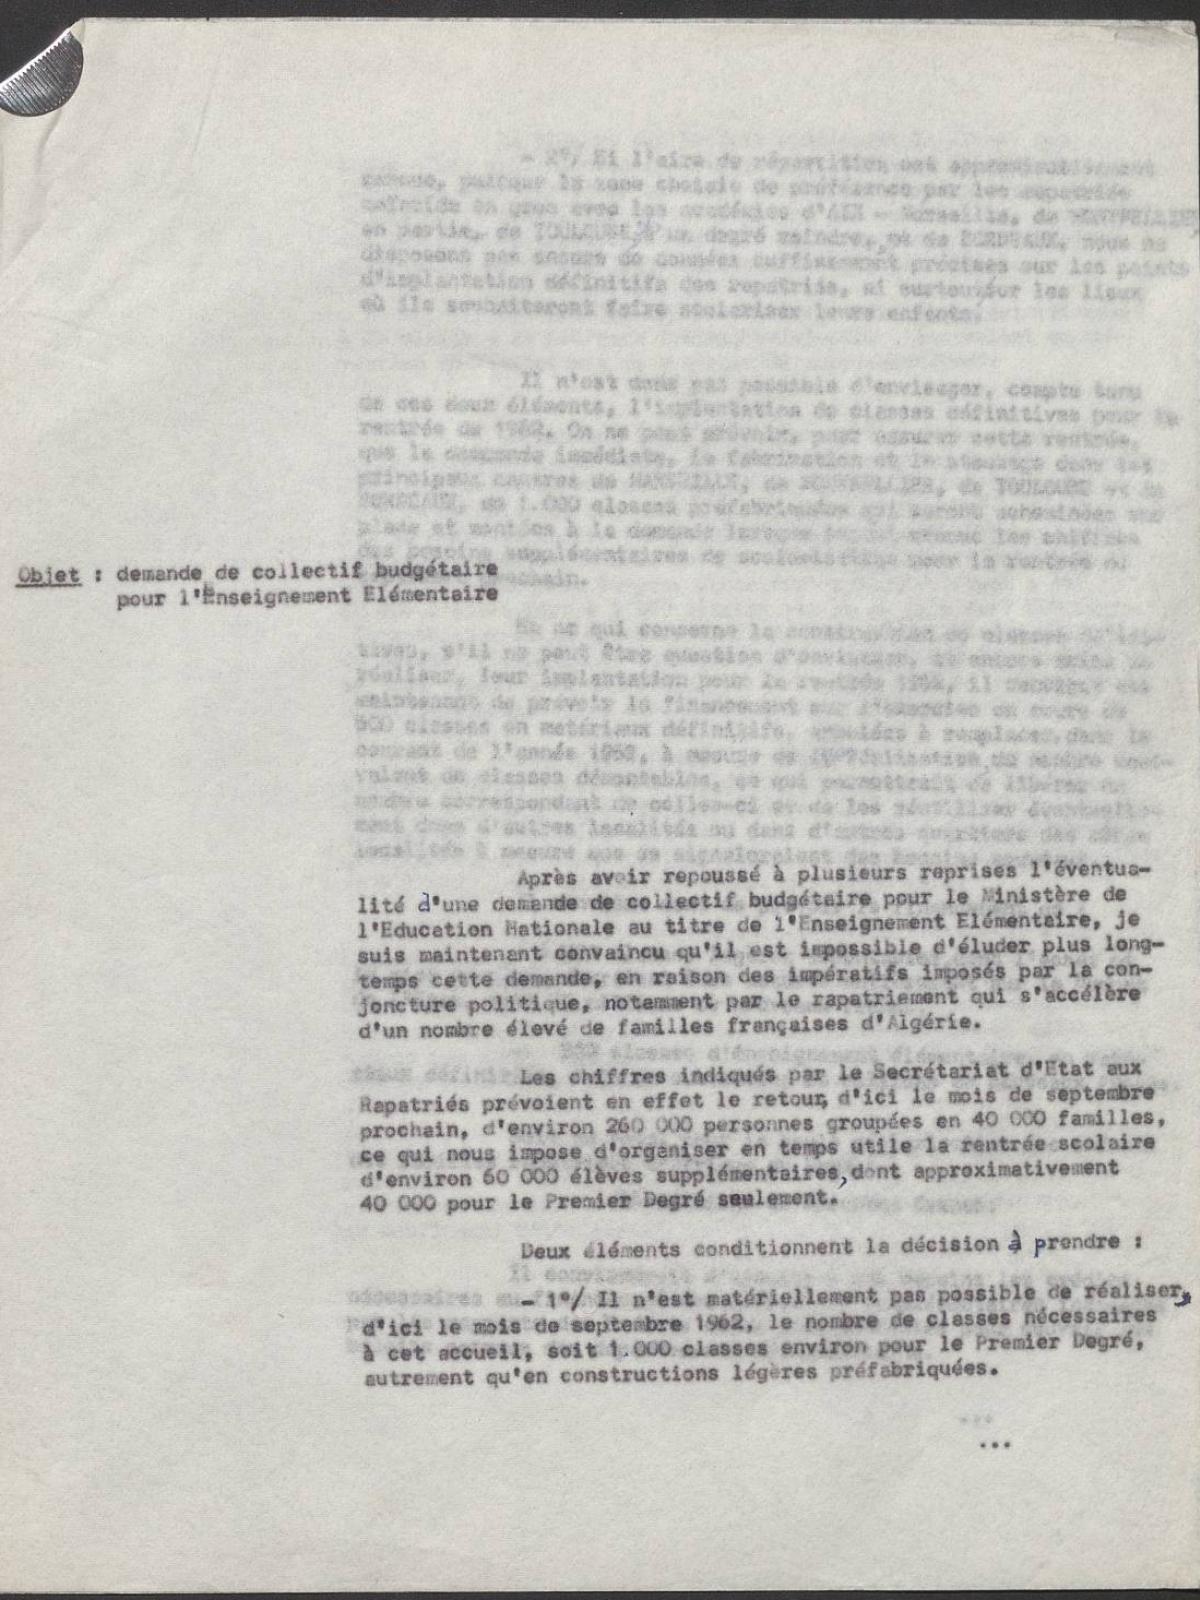 Illustration 2 : note du ministère de l’Éducation nationale relative à l’arrivée des rapatriés d’Algérie, 1962 (Archives nationales, 1977074/1)